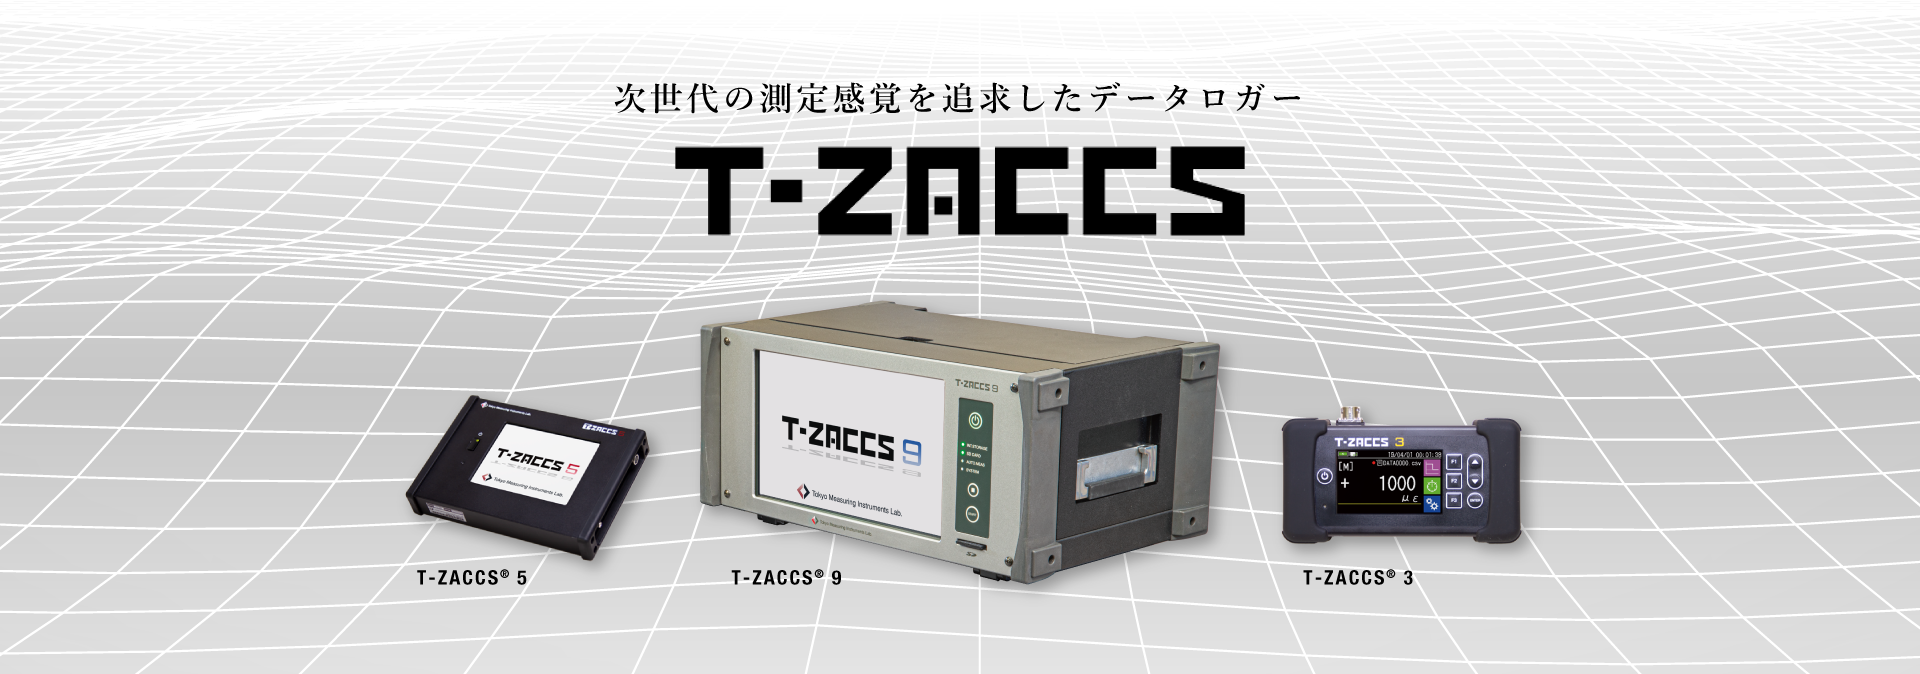 次世代の測定感覚を追求したデータロガー T-ZACCS